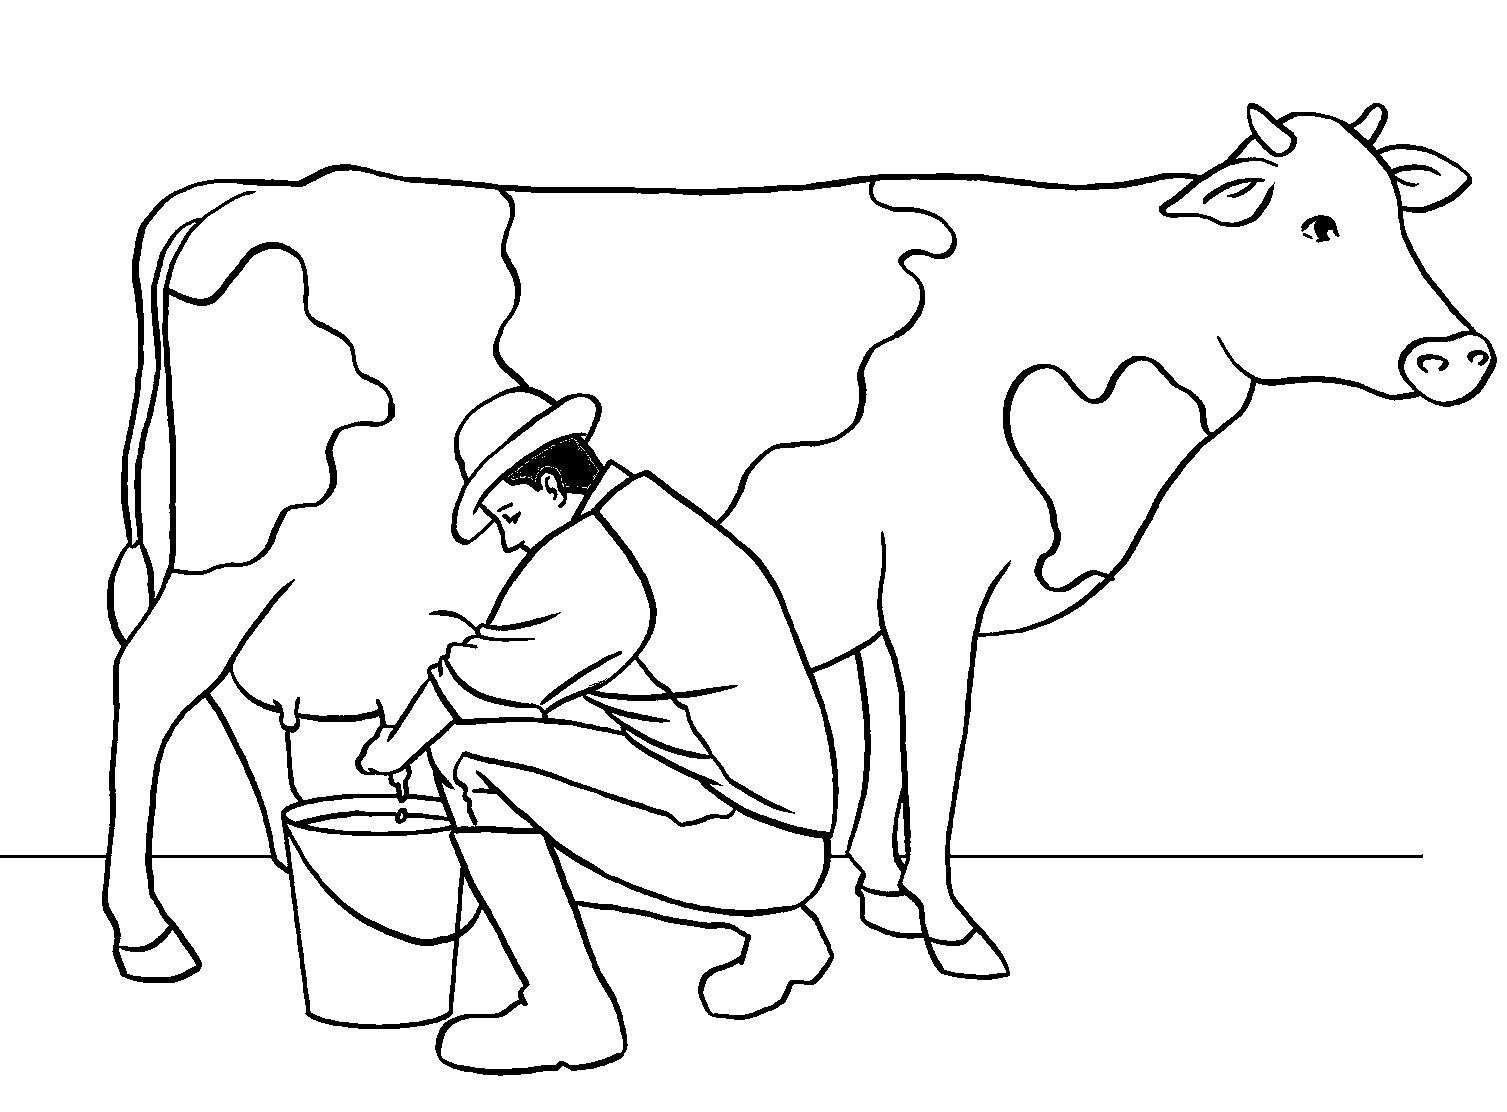 Målarbok av mannen som mjölkar en ko